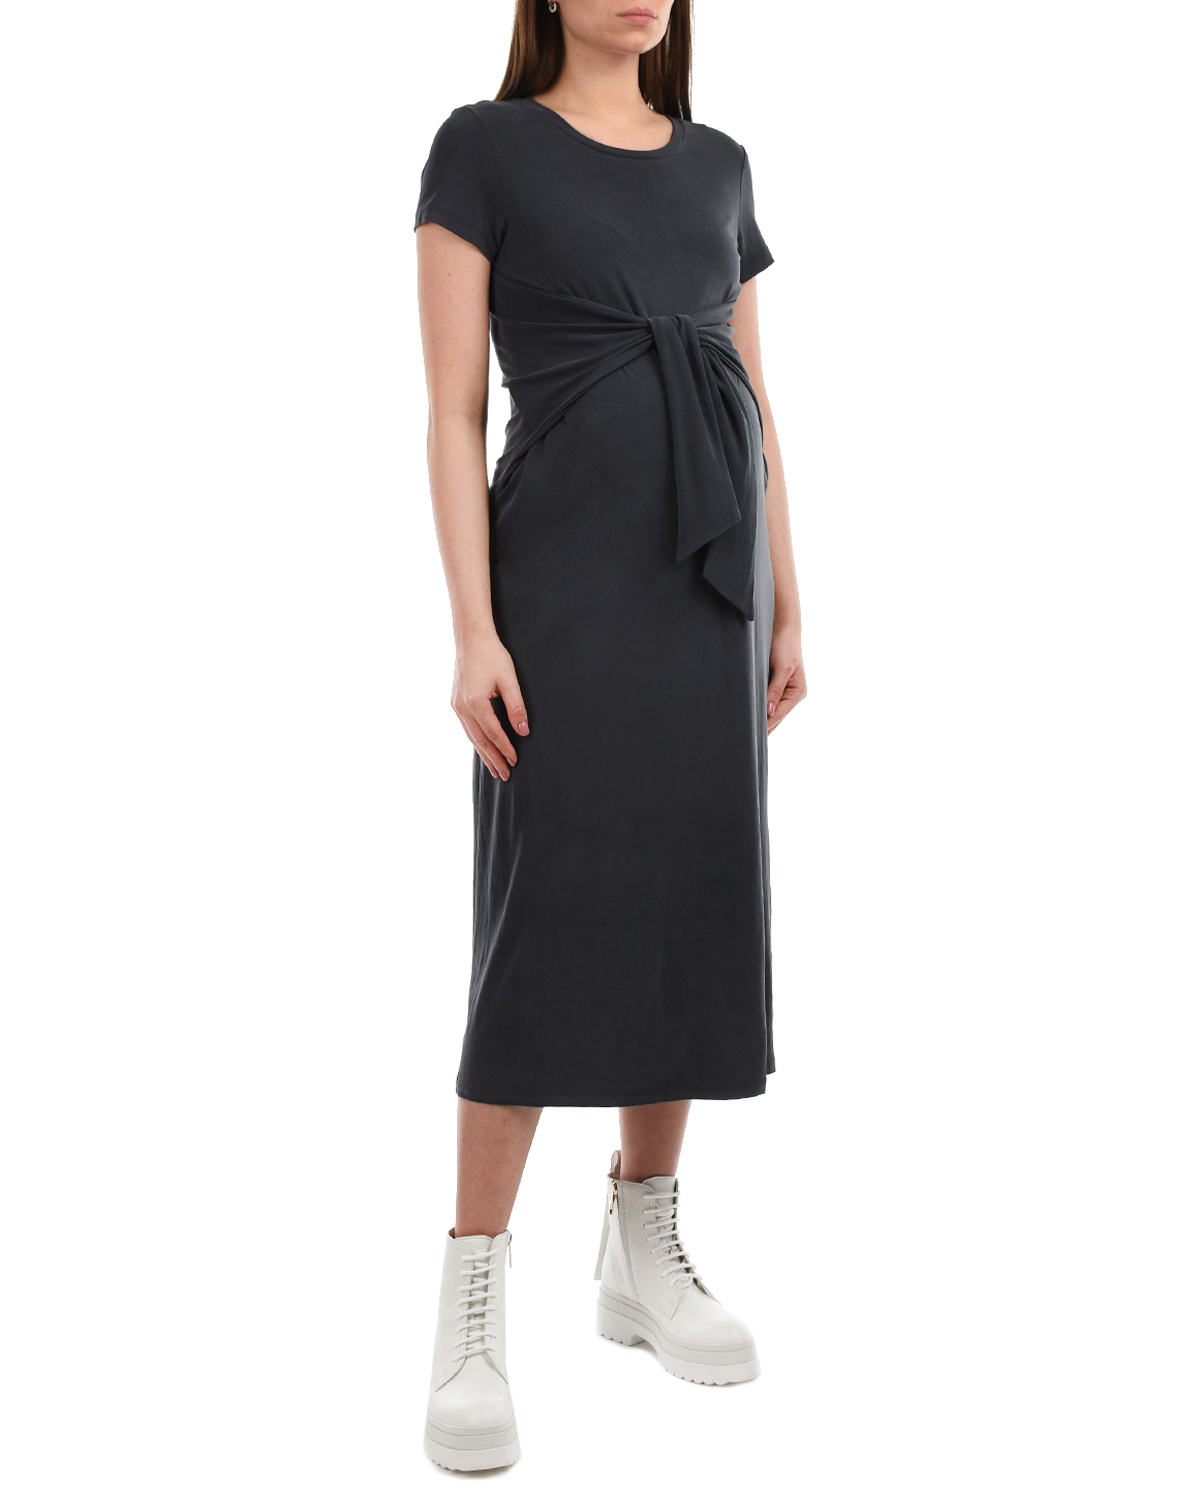 Темно-серое платье с короткими рукавами Attesa, размер 38, цвет серый - фото 2